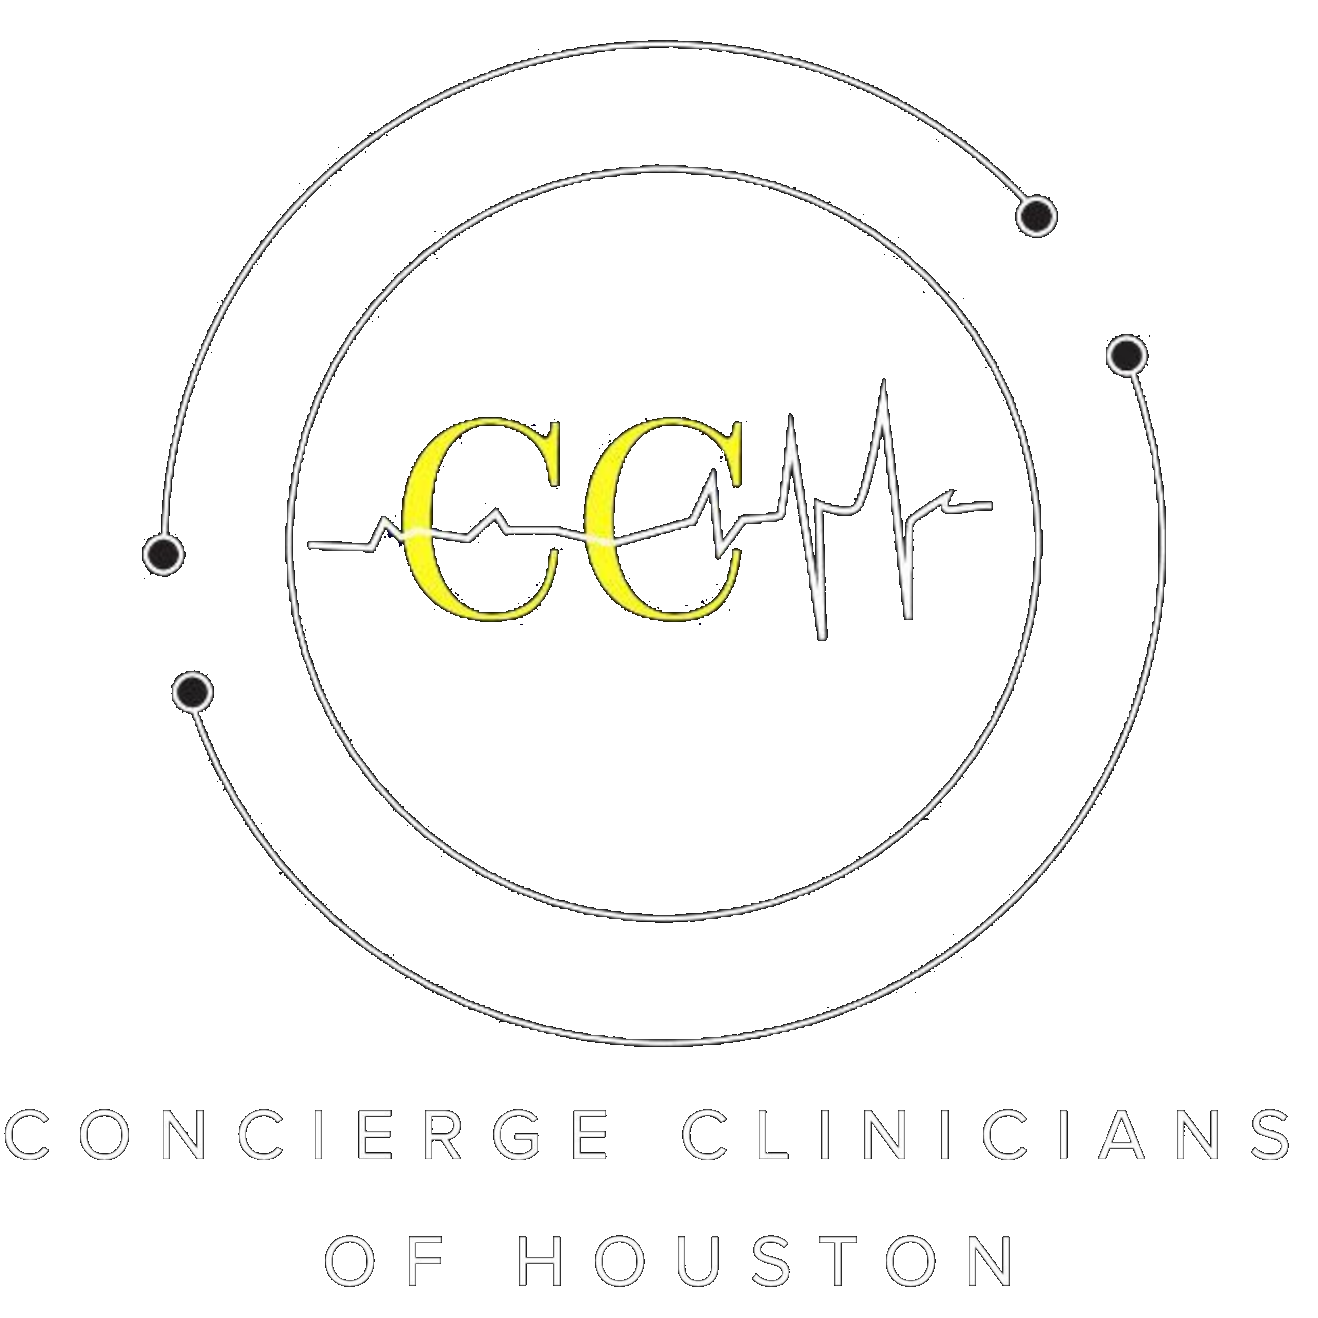 Concierge Clinicians of Houston